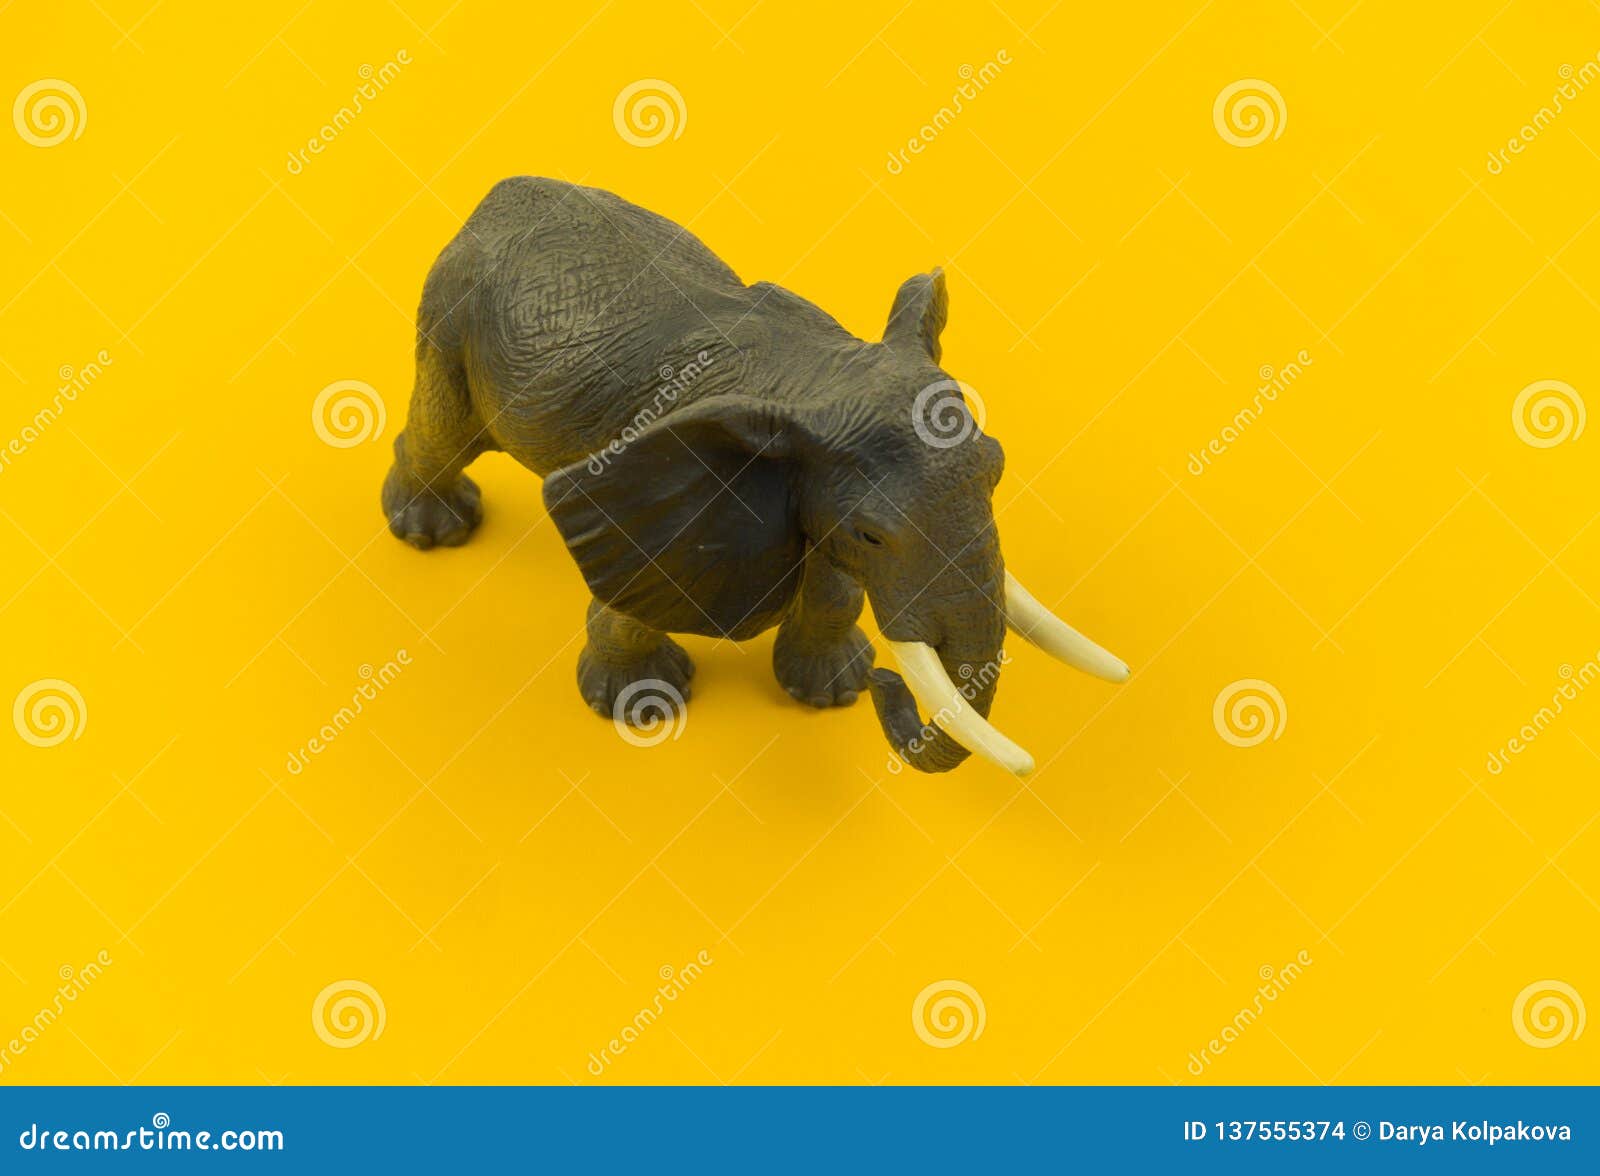 Large Plastic Elephant Toy on a Yellow Background Stock Photo - Image of  figure, elephant: 137555374